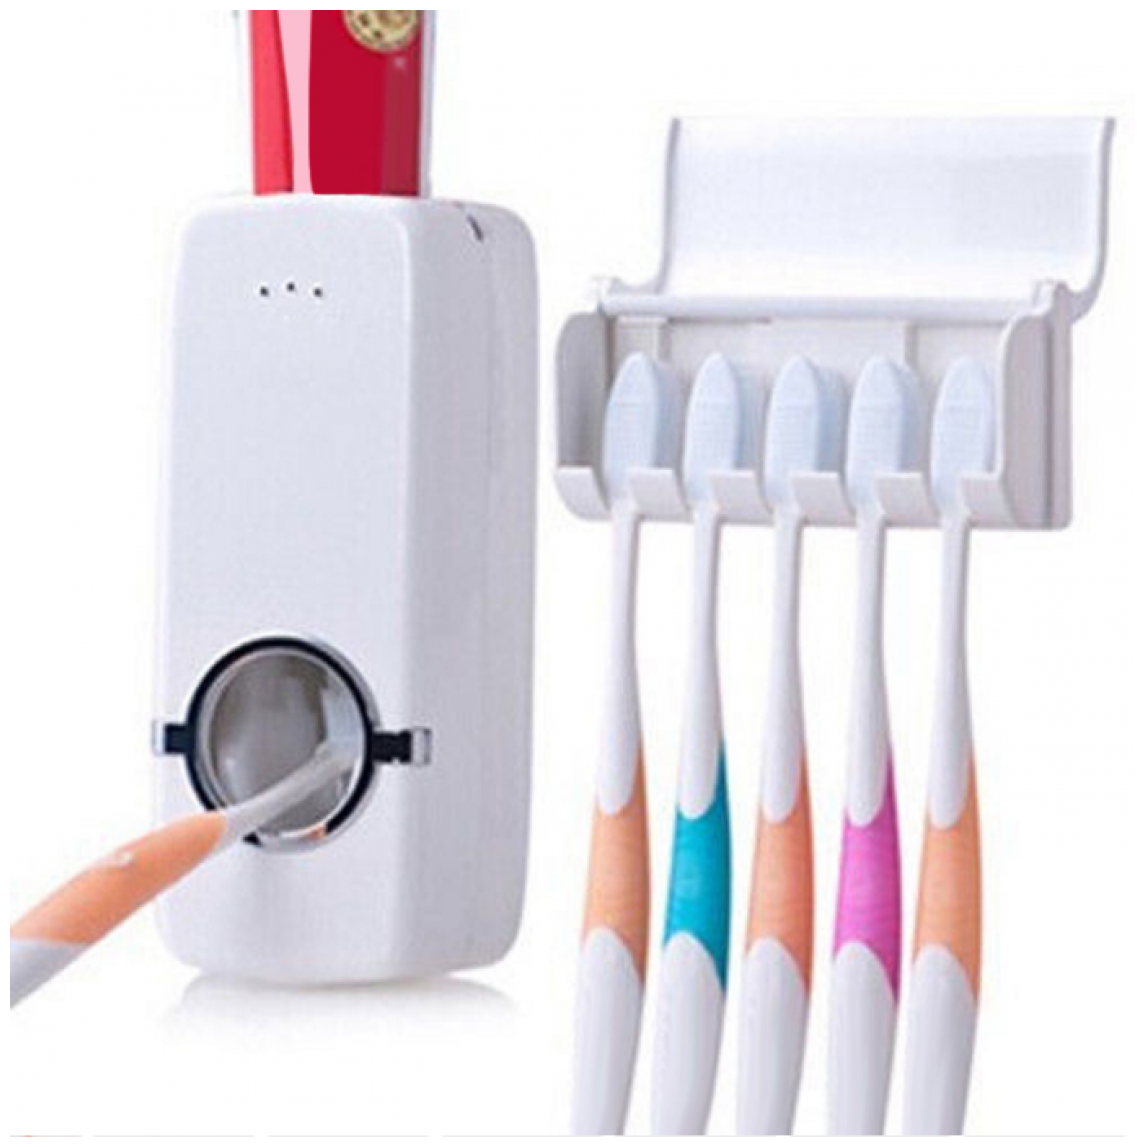 диспенсера для зубной пасты с держателем щеток